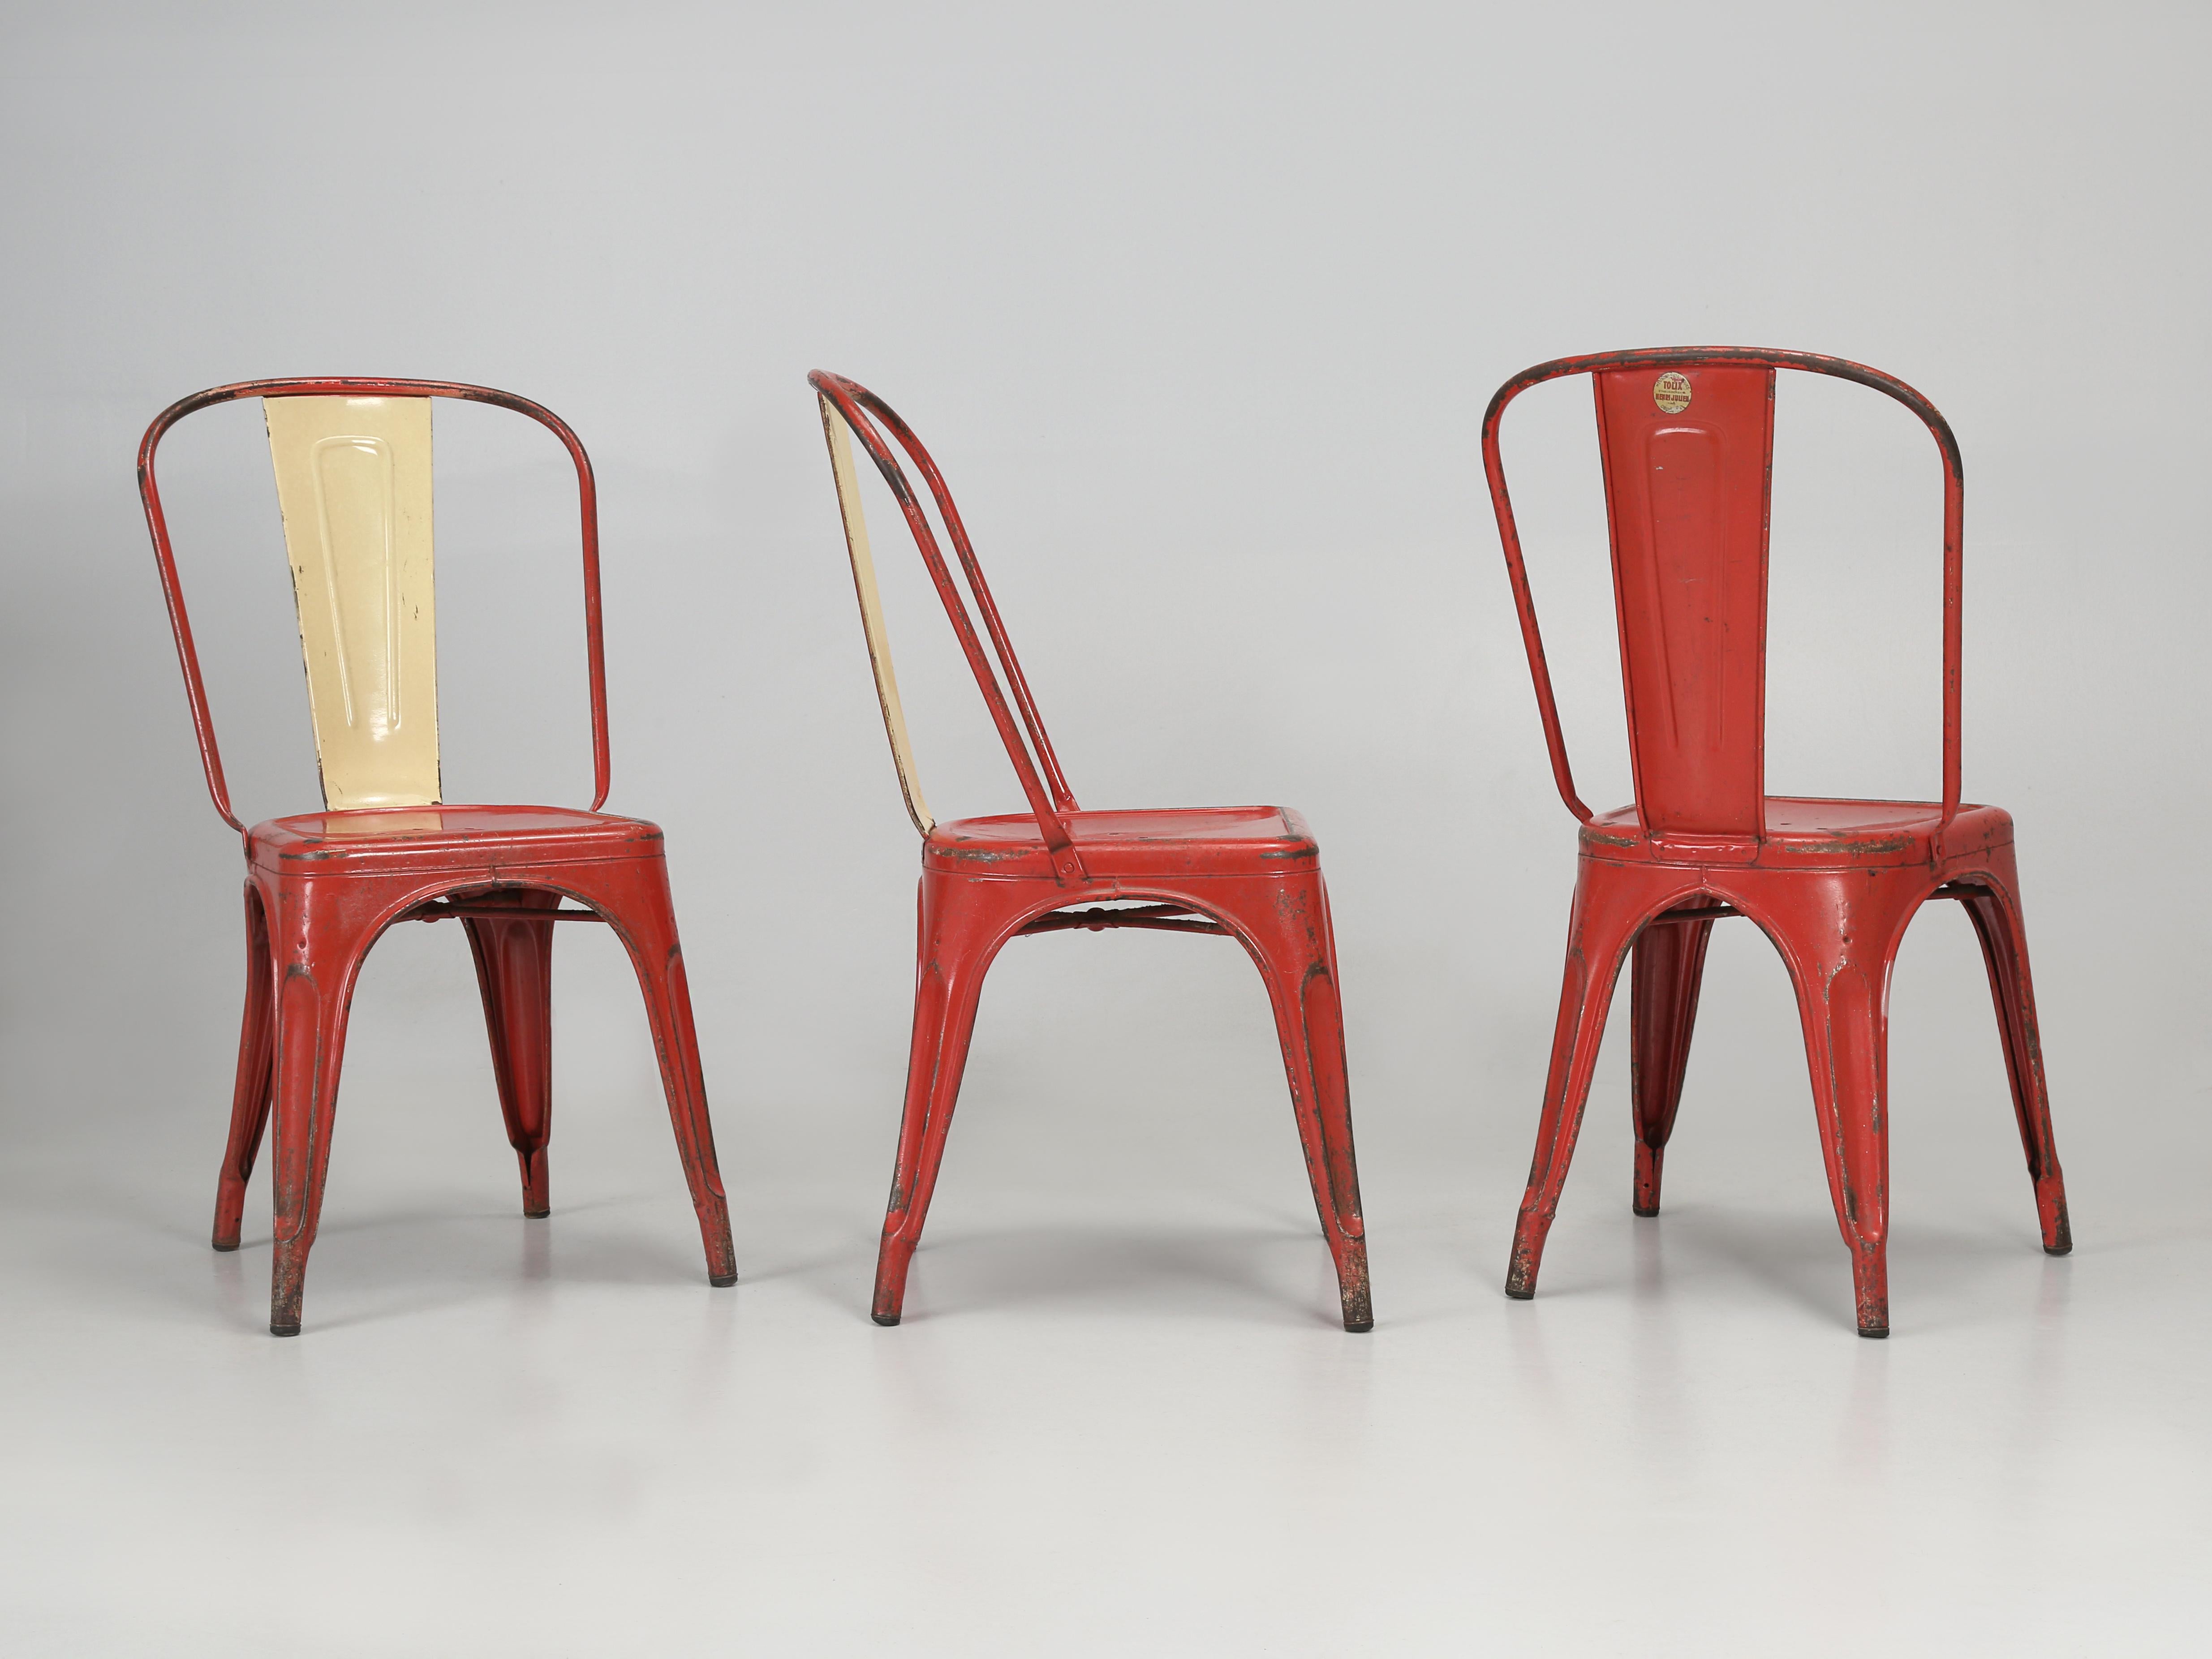 Authentique ensemble de (6) chaises empilables en acier Tolix circa 1950 fabriquées à la main en Europe, certaines avec l'autocollant Tolix encore sur le dos. La peinture d'origine est très abîmée et varie beaucoup d'une chaise Tolix à l'autre.